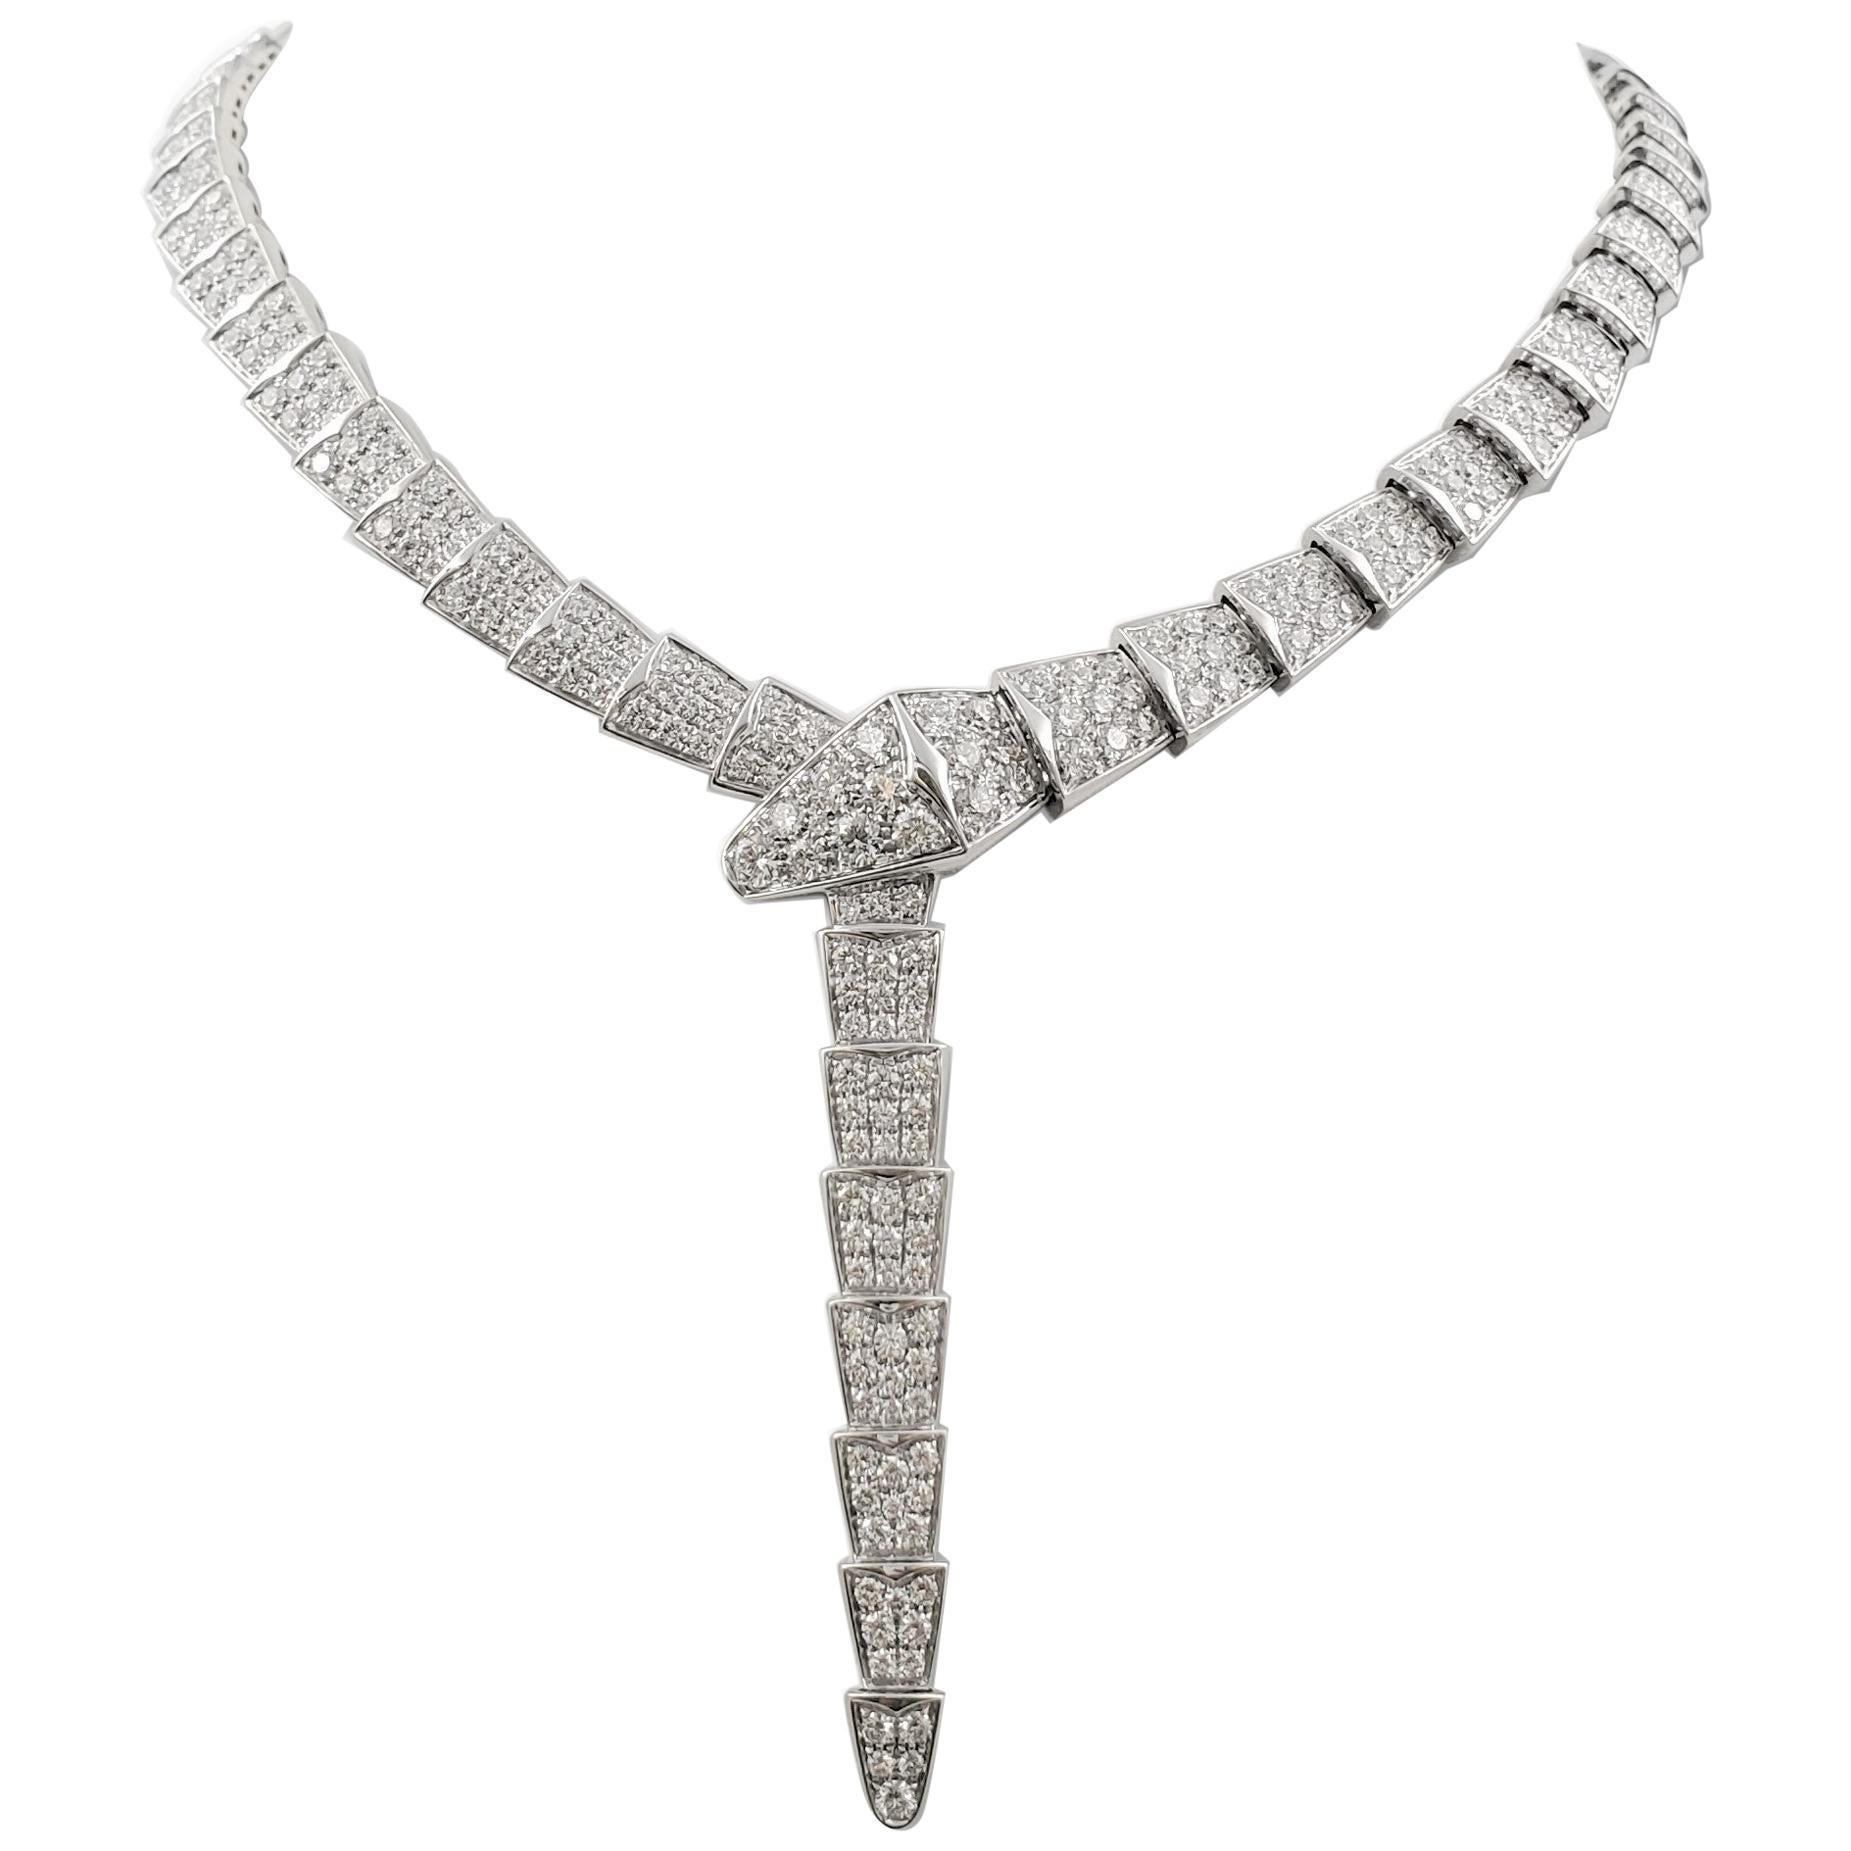 Bvlgari 'Serpenti Viper' White Gold and Diamond Necklace